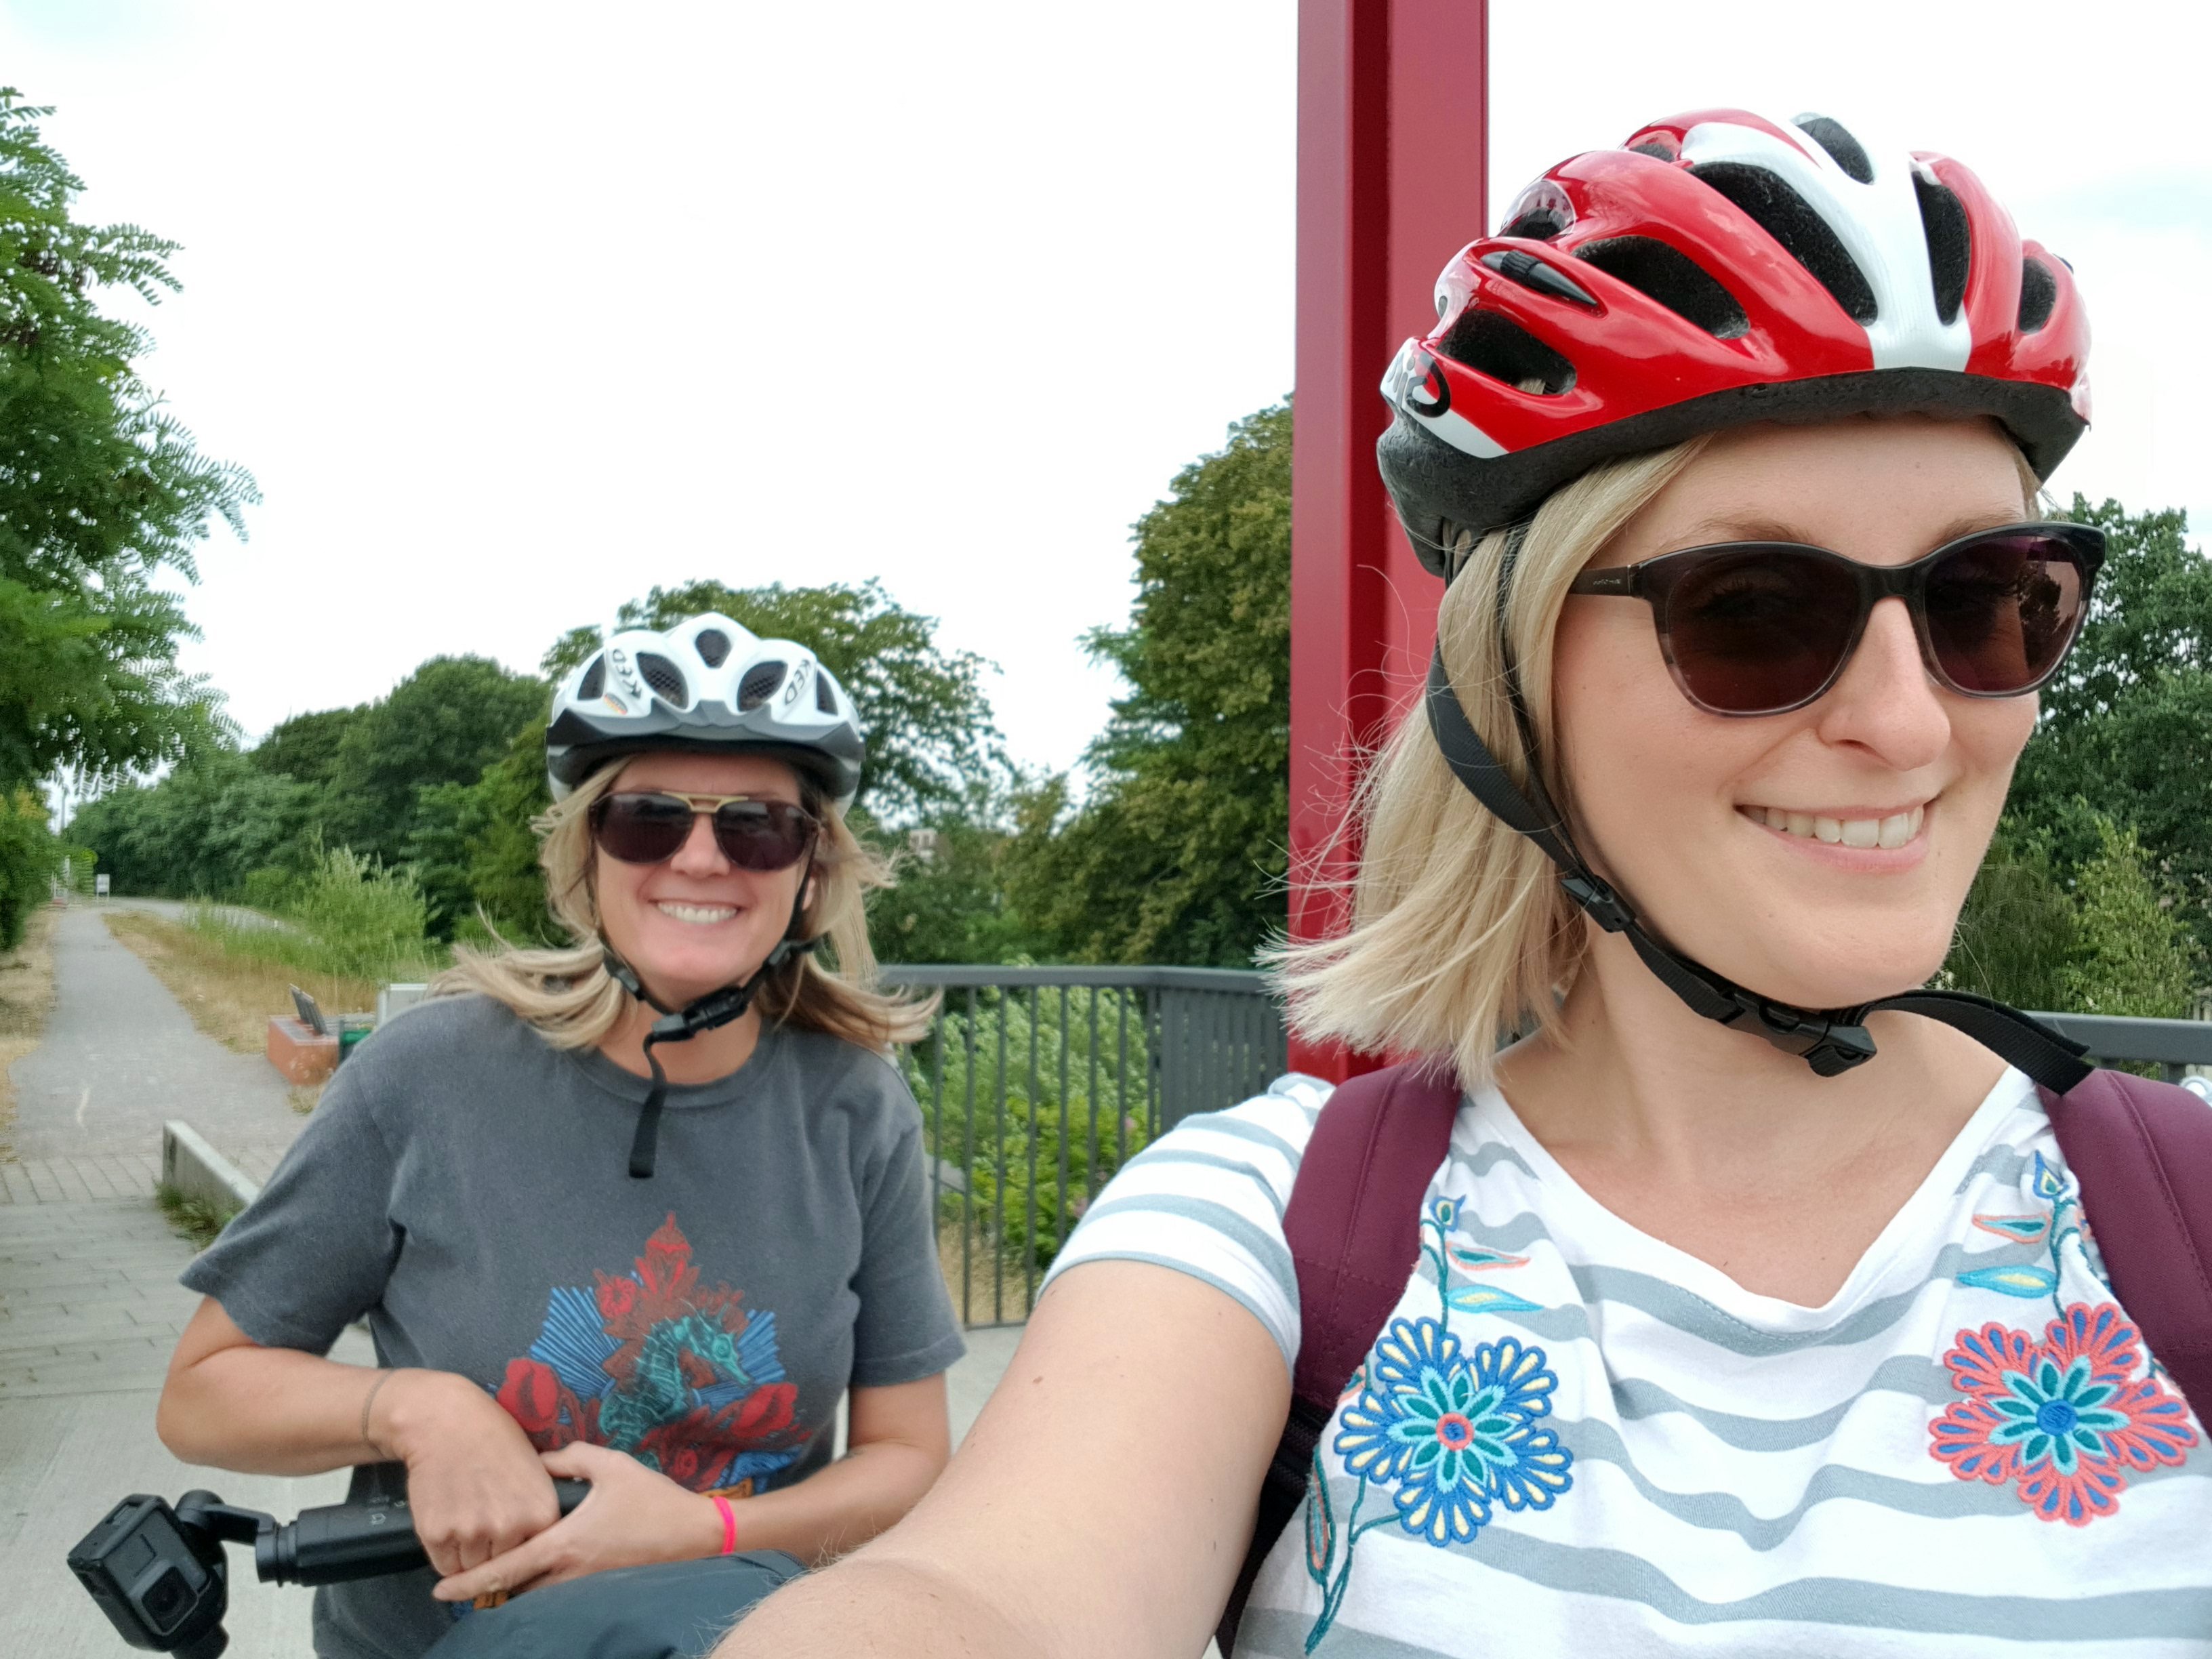 Das Bild zeigt zwei Frauen mit Fahrradhelmen